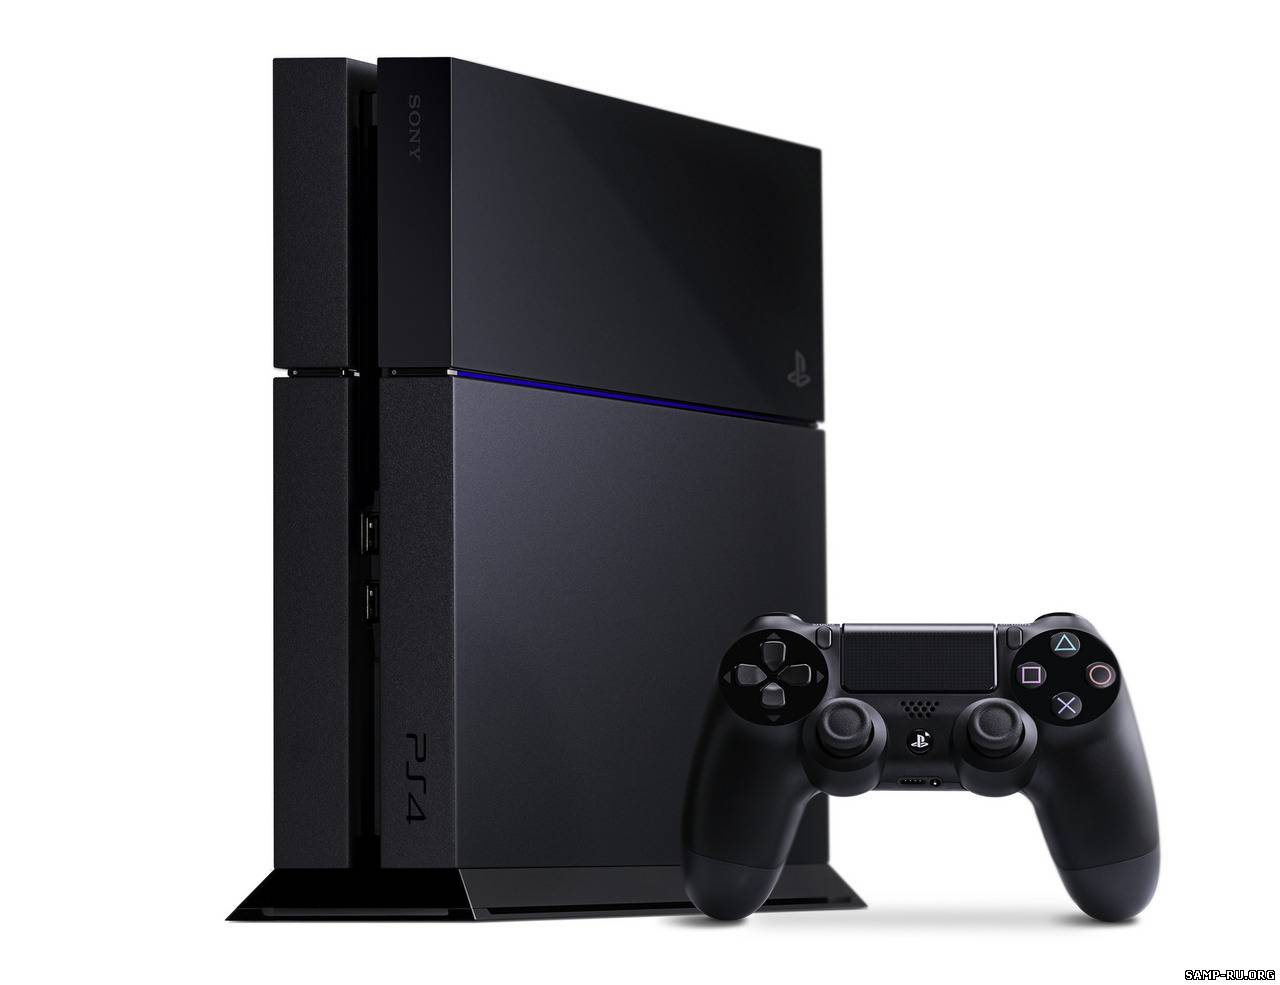 Обладатели PlayStation 4 смогут управлять консолью голосом